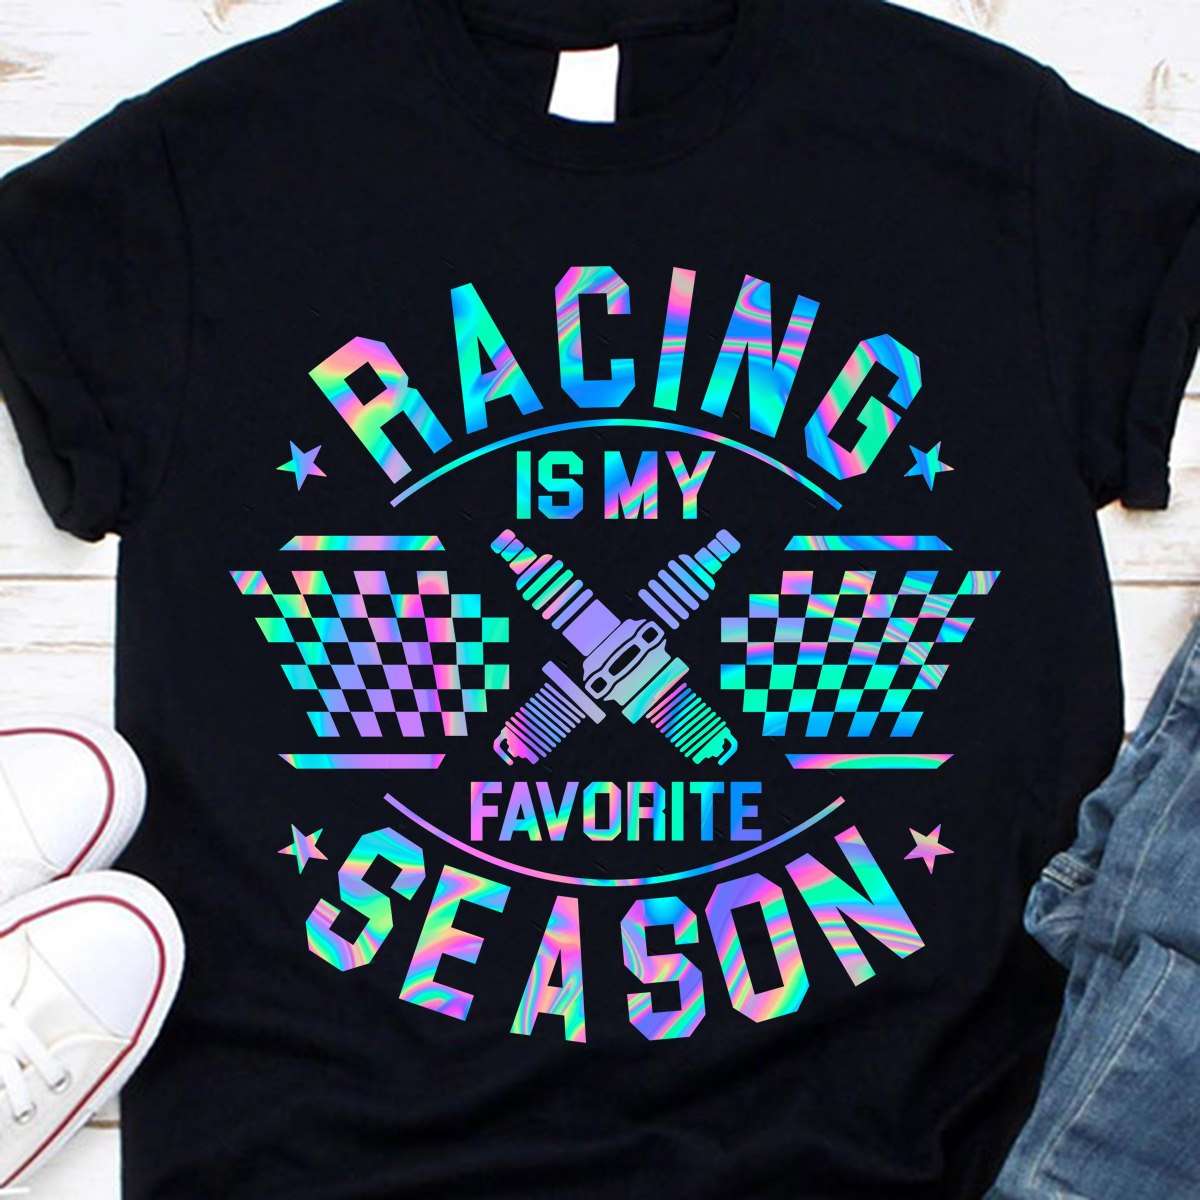 Racing is my favorite season - Racing the hobby, racing season